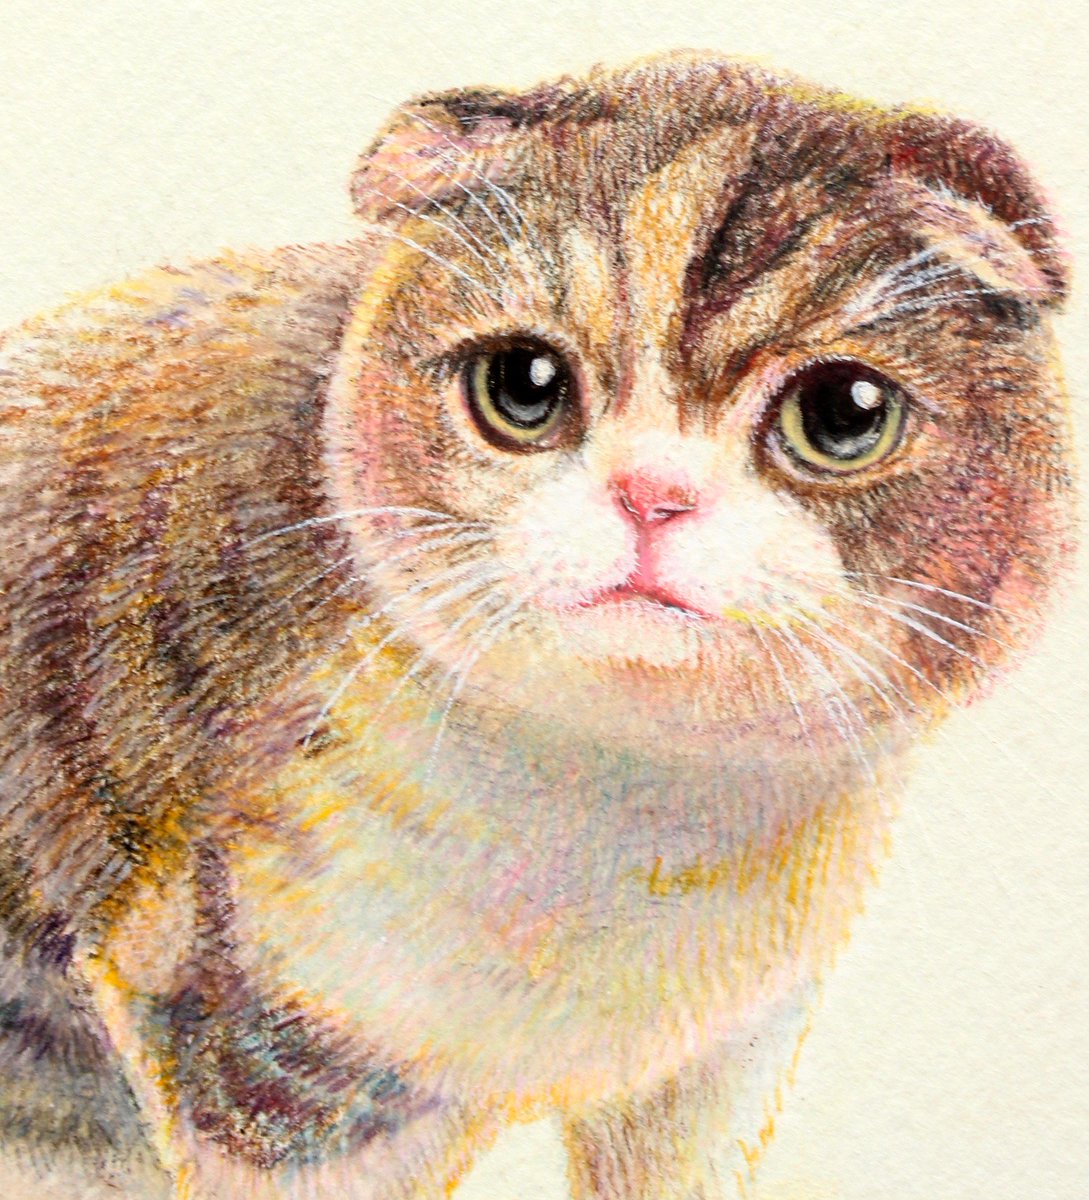 おしるこイラストレーション Pa Twitter スコティッシュフォールドのまるこちゃん 金沢の美容室さんの看板猫ちゃんとのことで こちらのブログで愛でられます 本物可愛すぎ T Co Koggh8jblt メルカリ ミンネ イラストオーダー 色鉛筆